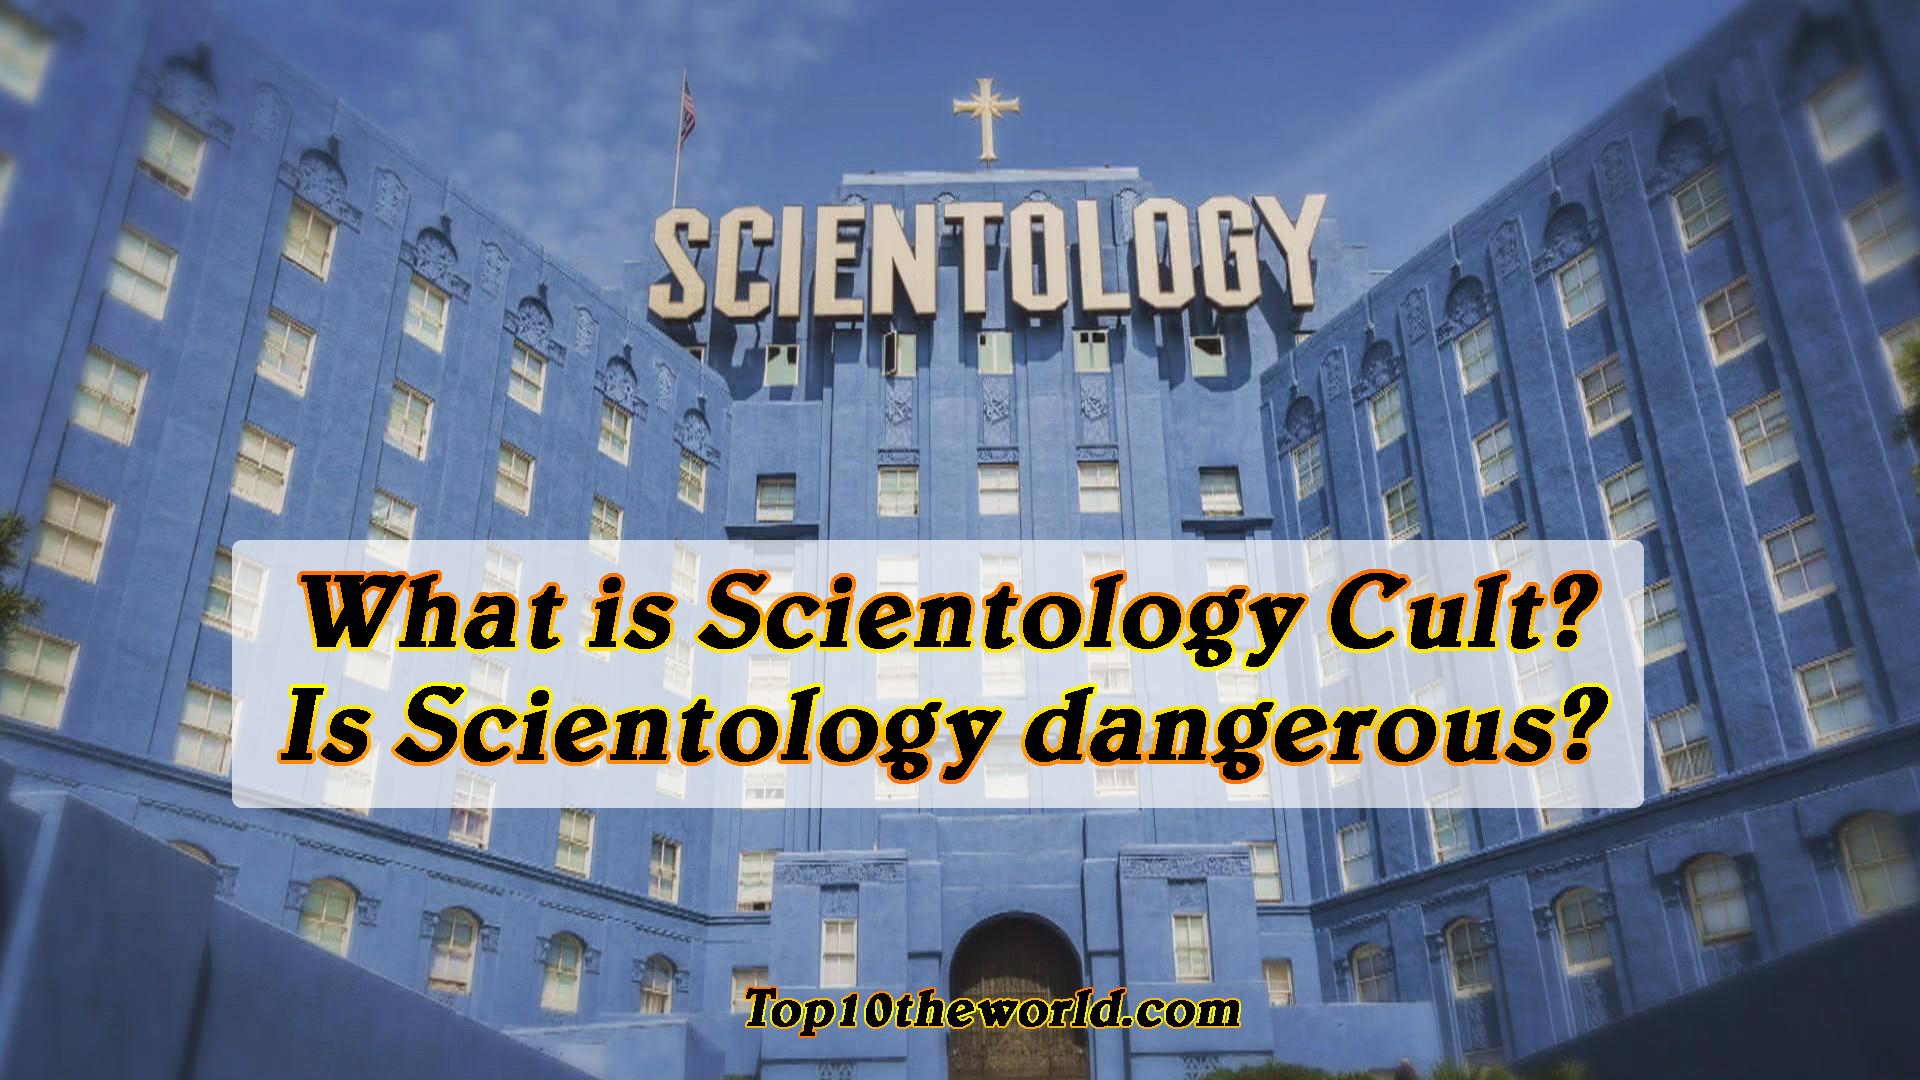 Scientology Cult